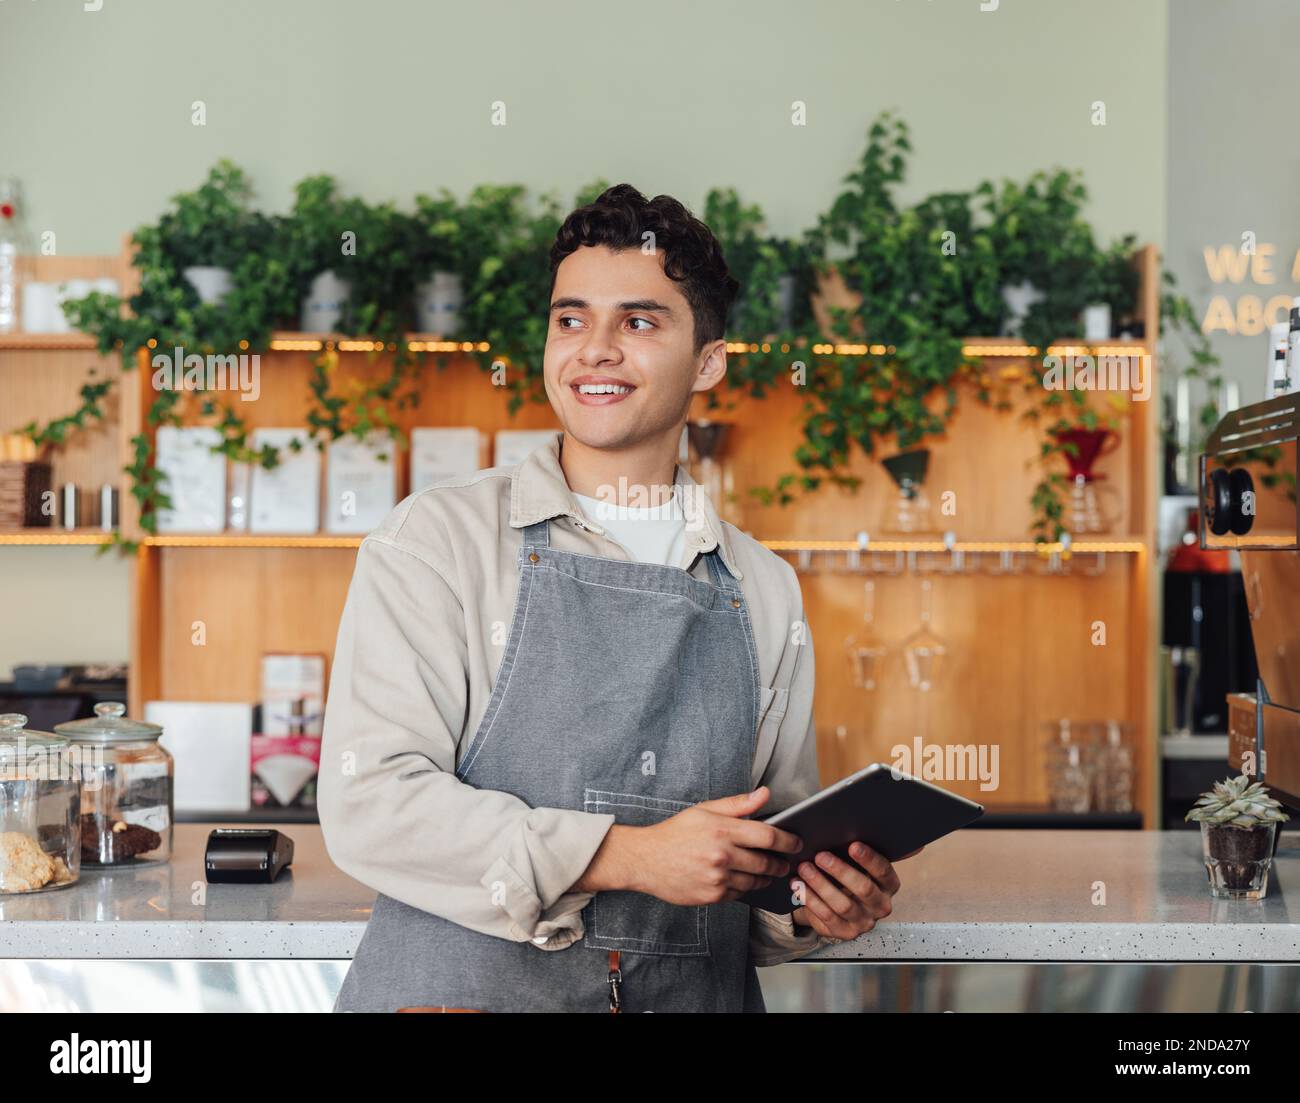 Männlicher Coffee-Shop-Besitzer in der Schürzentheke. Nahöstlicher Barista, der ein digitales Tablet hält und wegschaut. Stockfoto